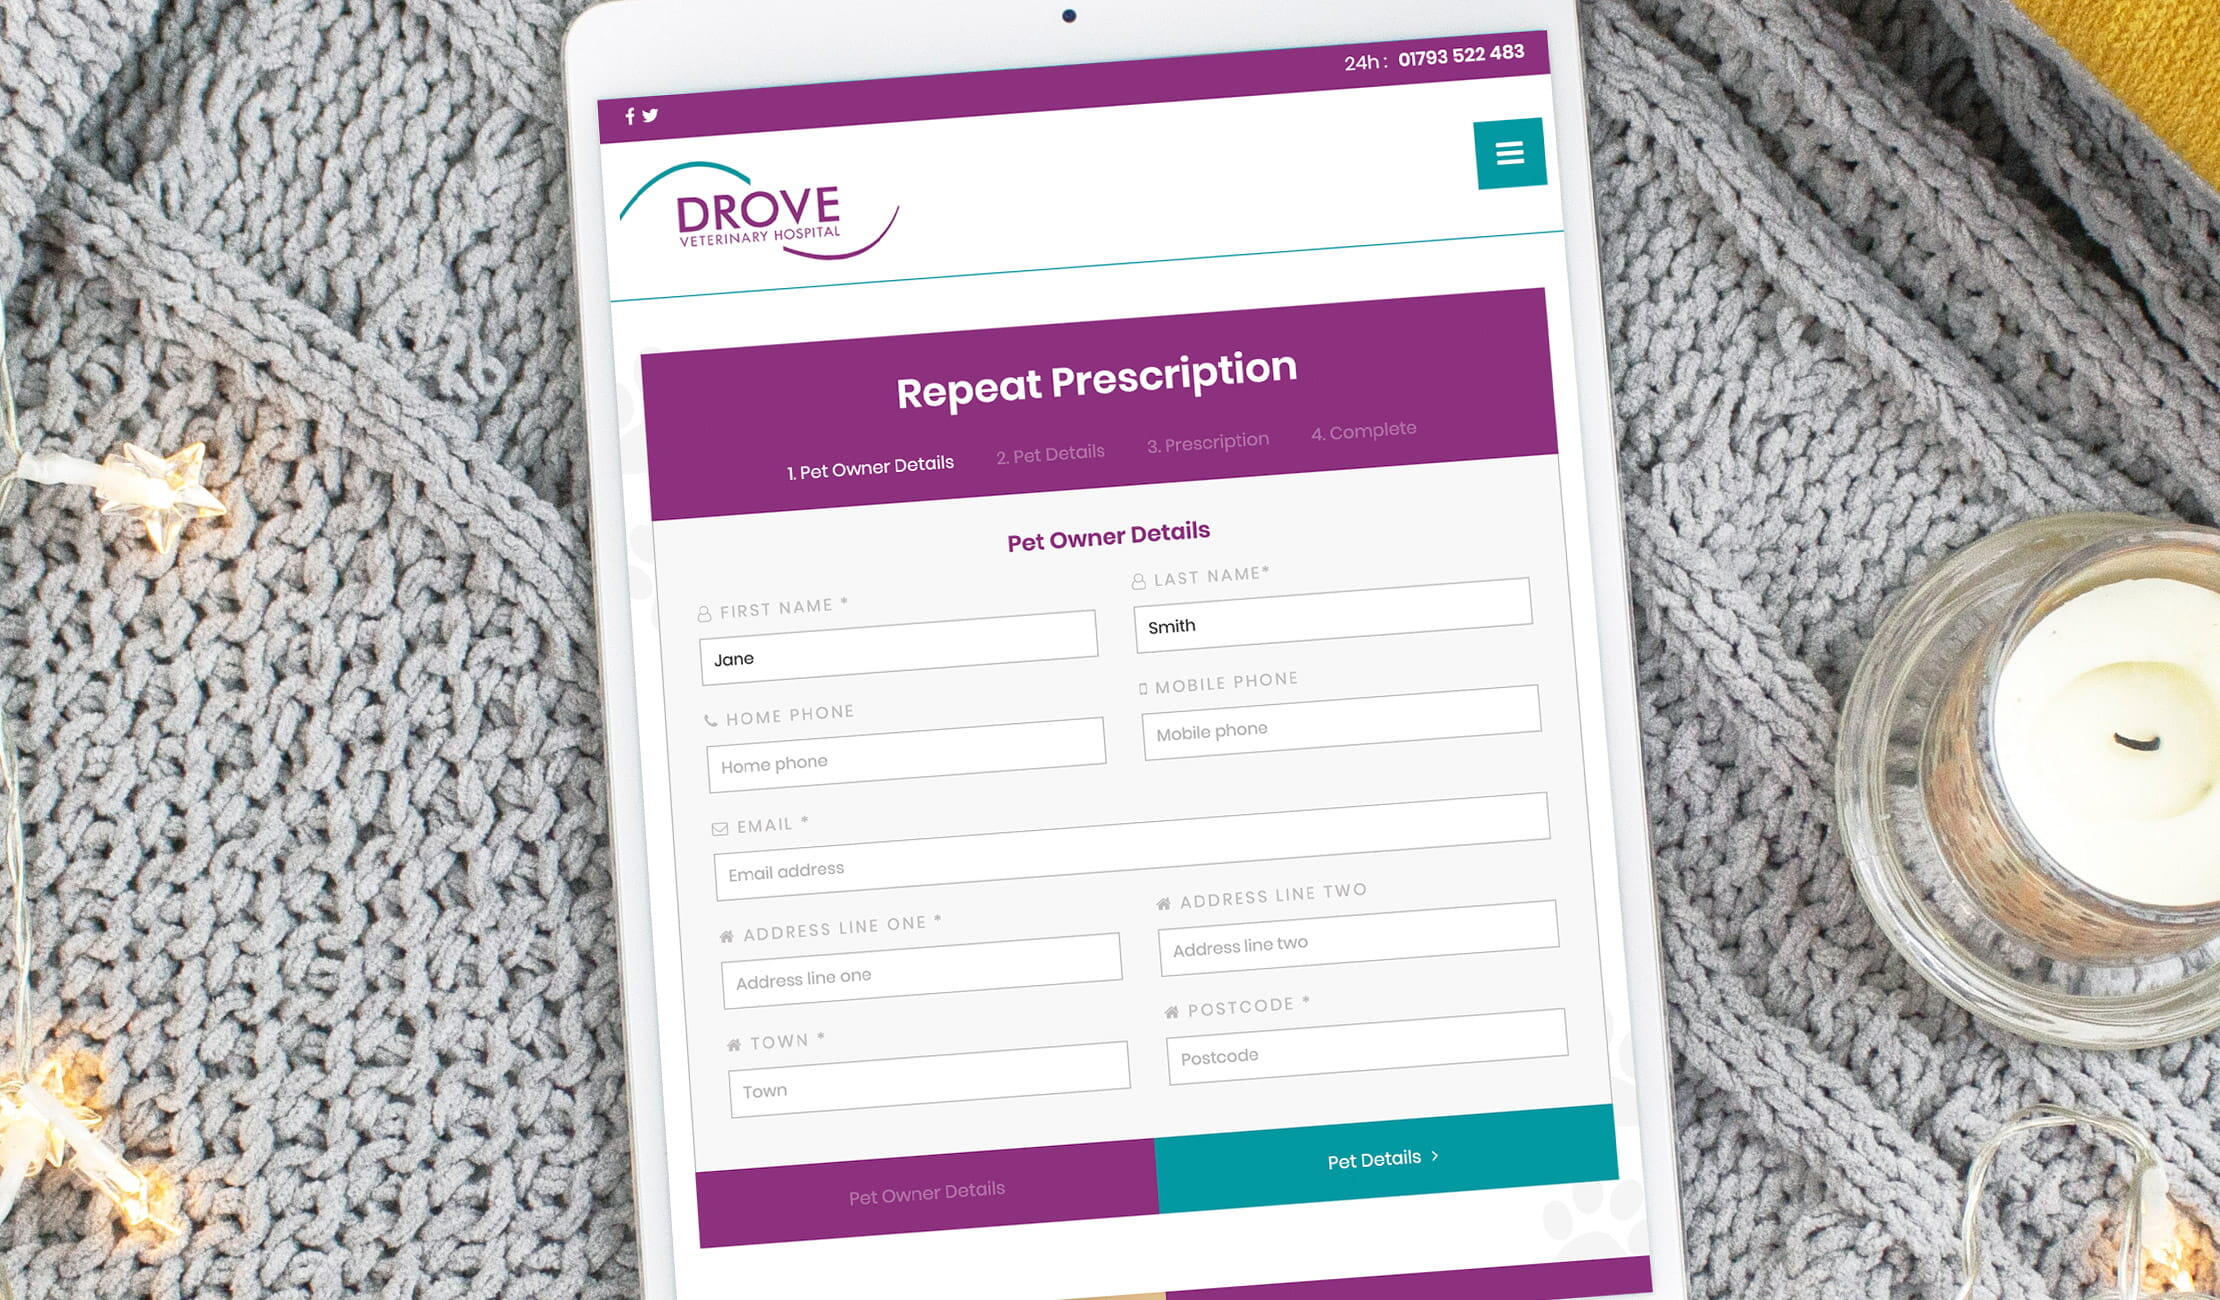 Tablet mobile optimised website design for Drove Vets